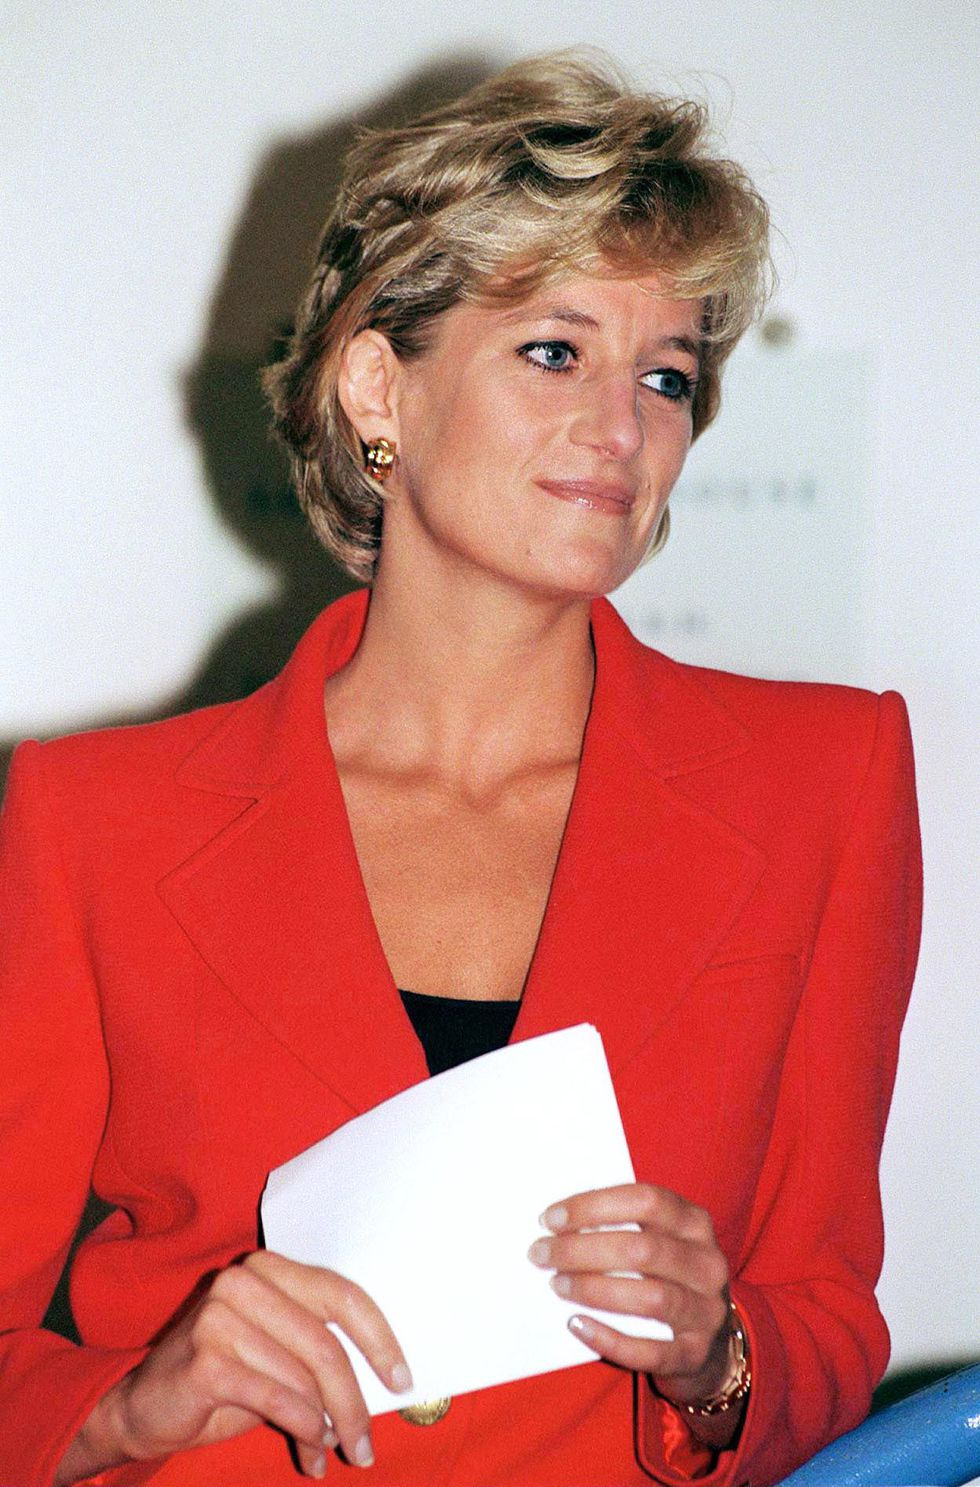 16. Vždy&nbsp;psala děkovné dopisy

Diana byla známá pro psaní děkovných karet každému, kdo jí dal dárek. Údajně napsala poděkování všem, kteří po narození přinesli princi Williamovi dary. Bylo jich tisíce. Některé ručně psané dopisy byly vydraženy od 2 000 do 2 000 000 dolarů, v závislosti na obsahu a jejich jedinečnosti.
